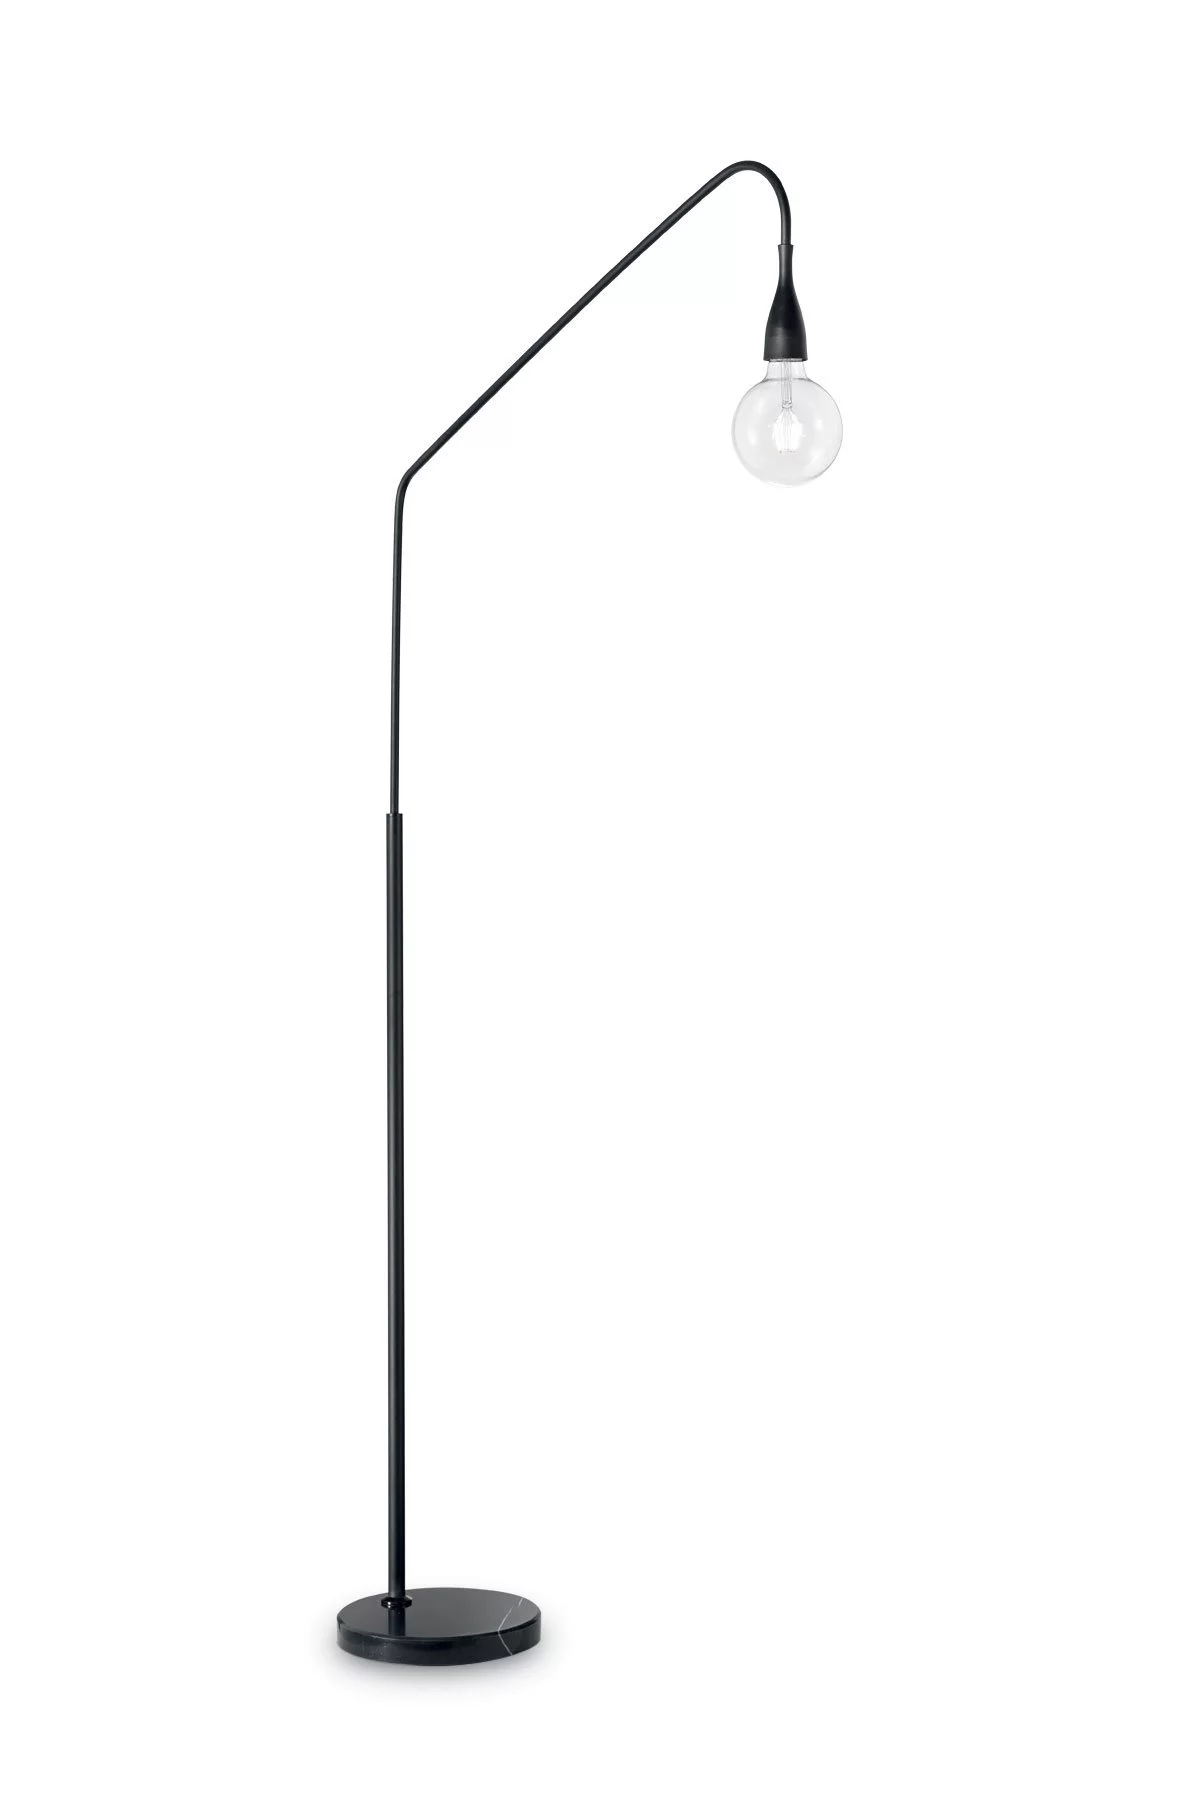   
                        Торшер IDEAL LUX (Італія) 13434    
                         у стилі лофт.  
                        Тип джерела світла: cвітлодіодні led, енергозберігаючі, розжарювання.                                                                                                  фото 1